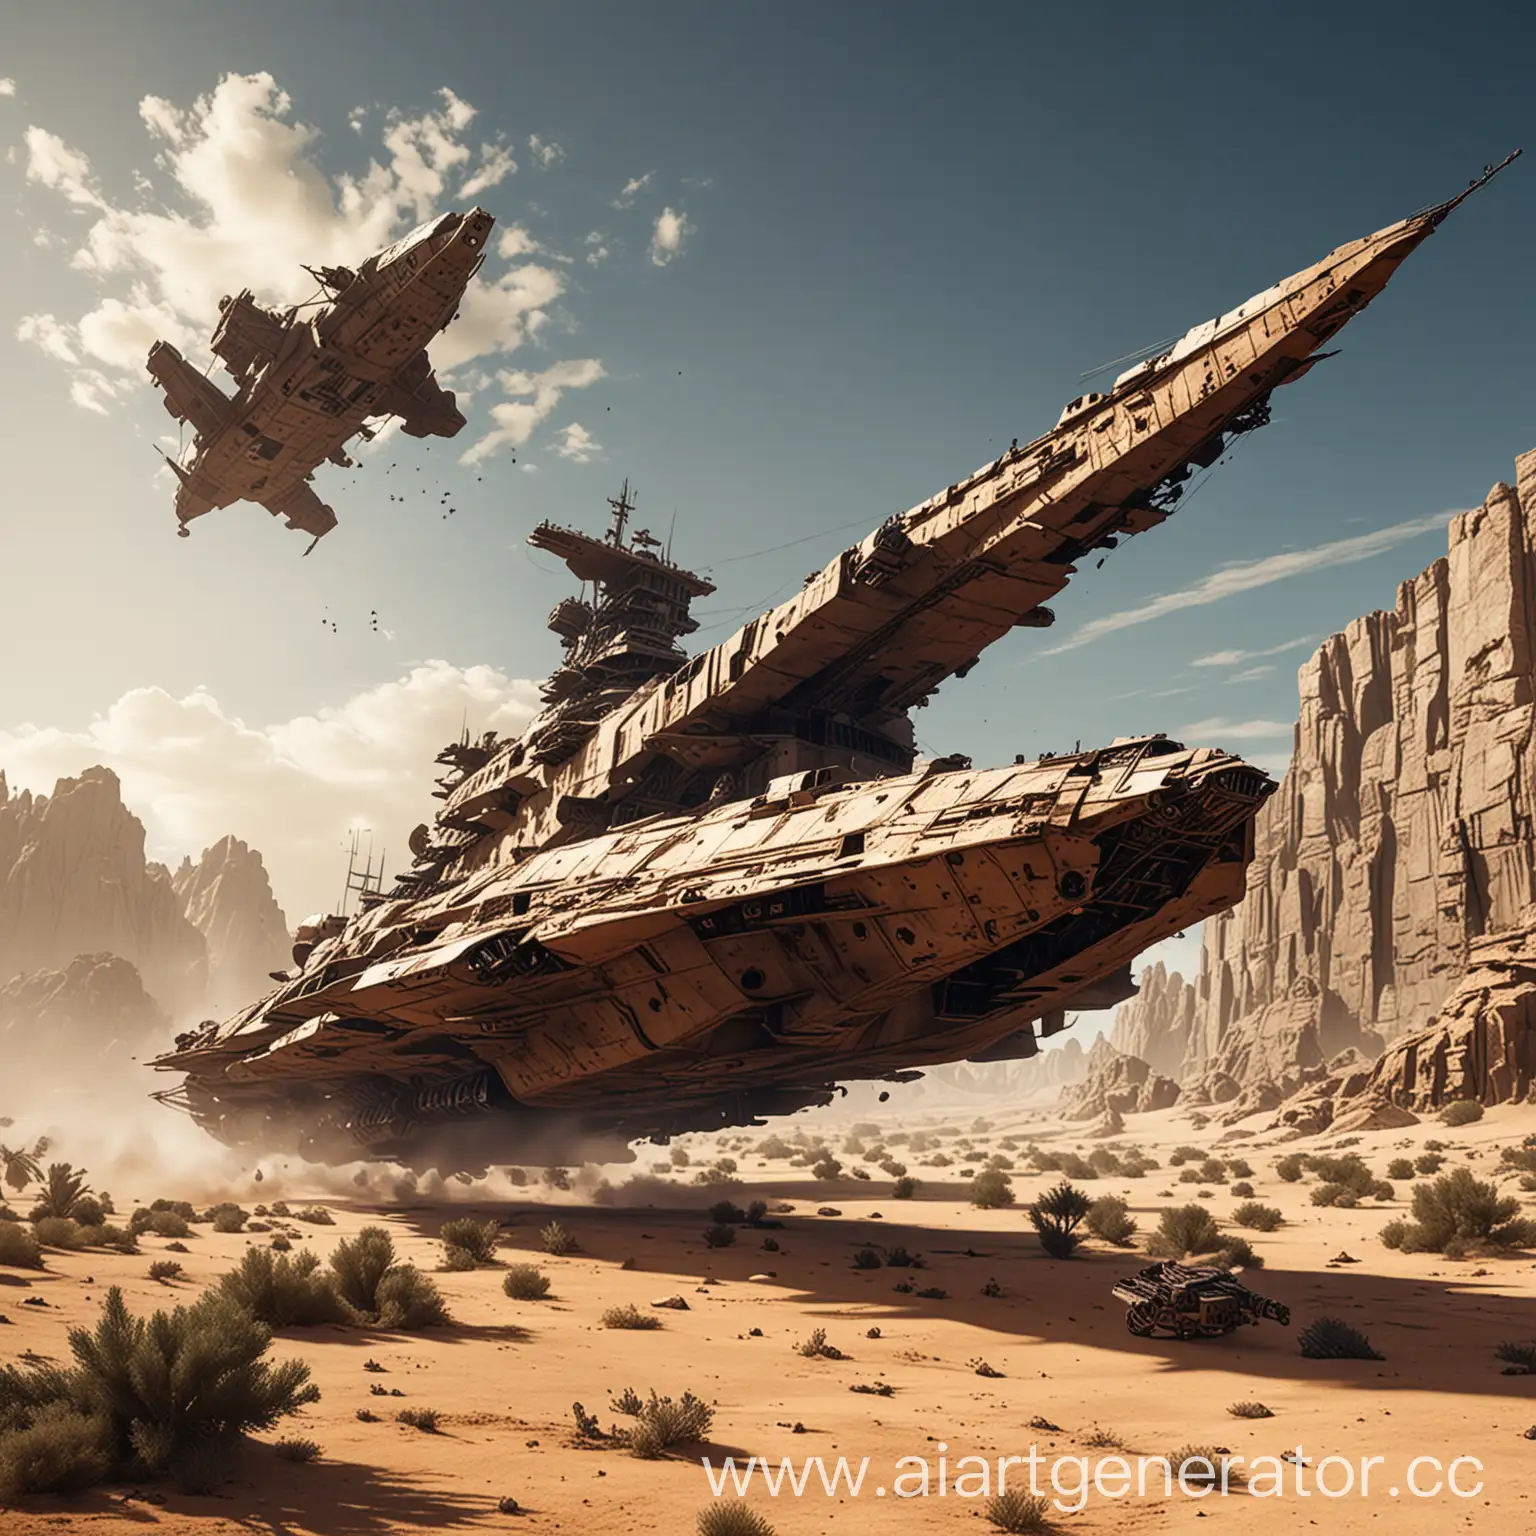 Dynamic-Desert-Scene-Flying-Battleship-Amidst-Ruined-Buildings